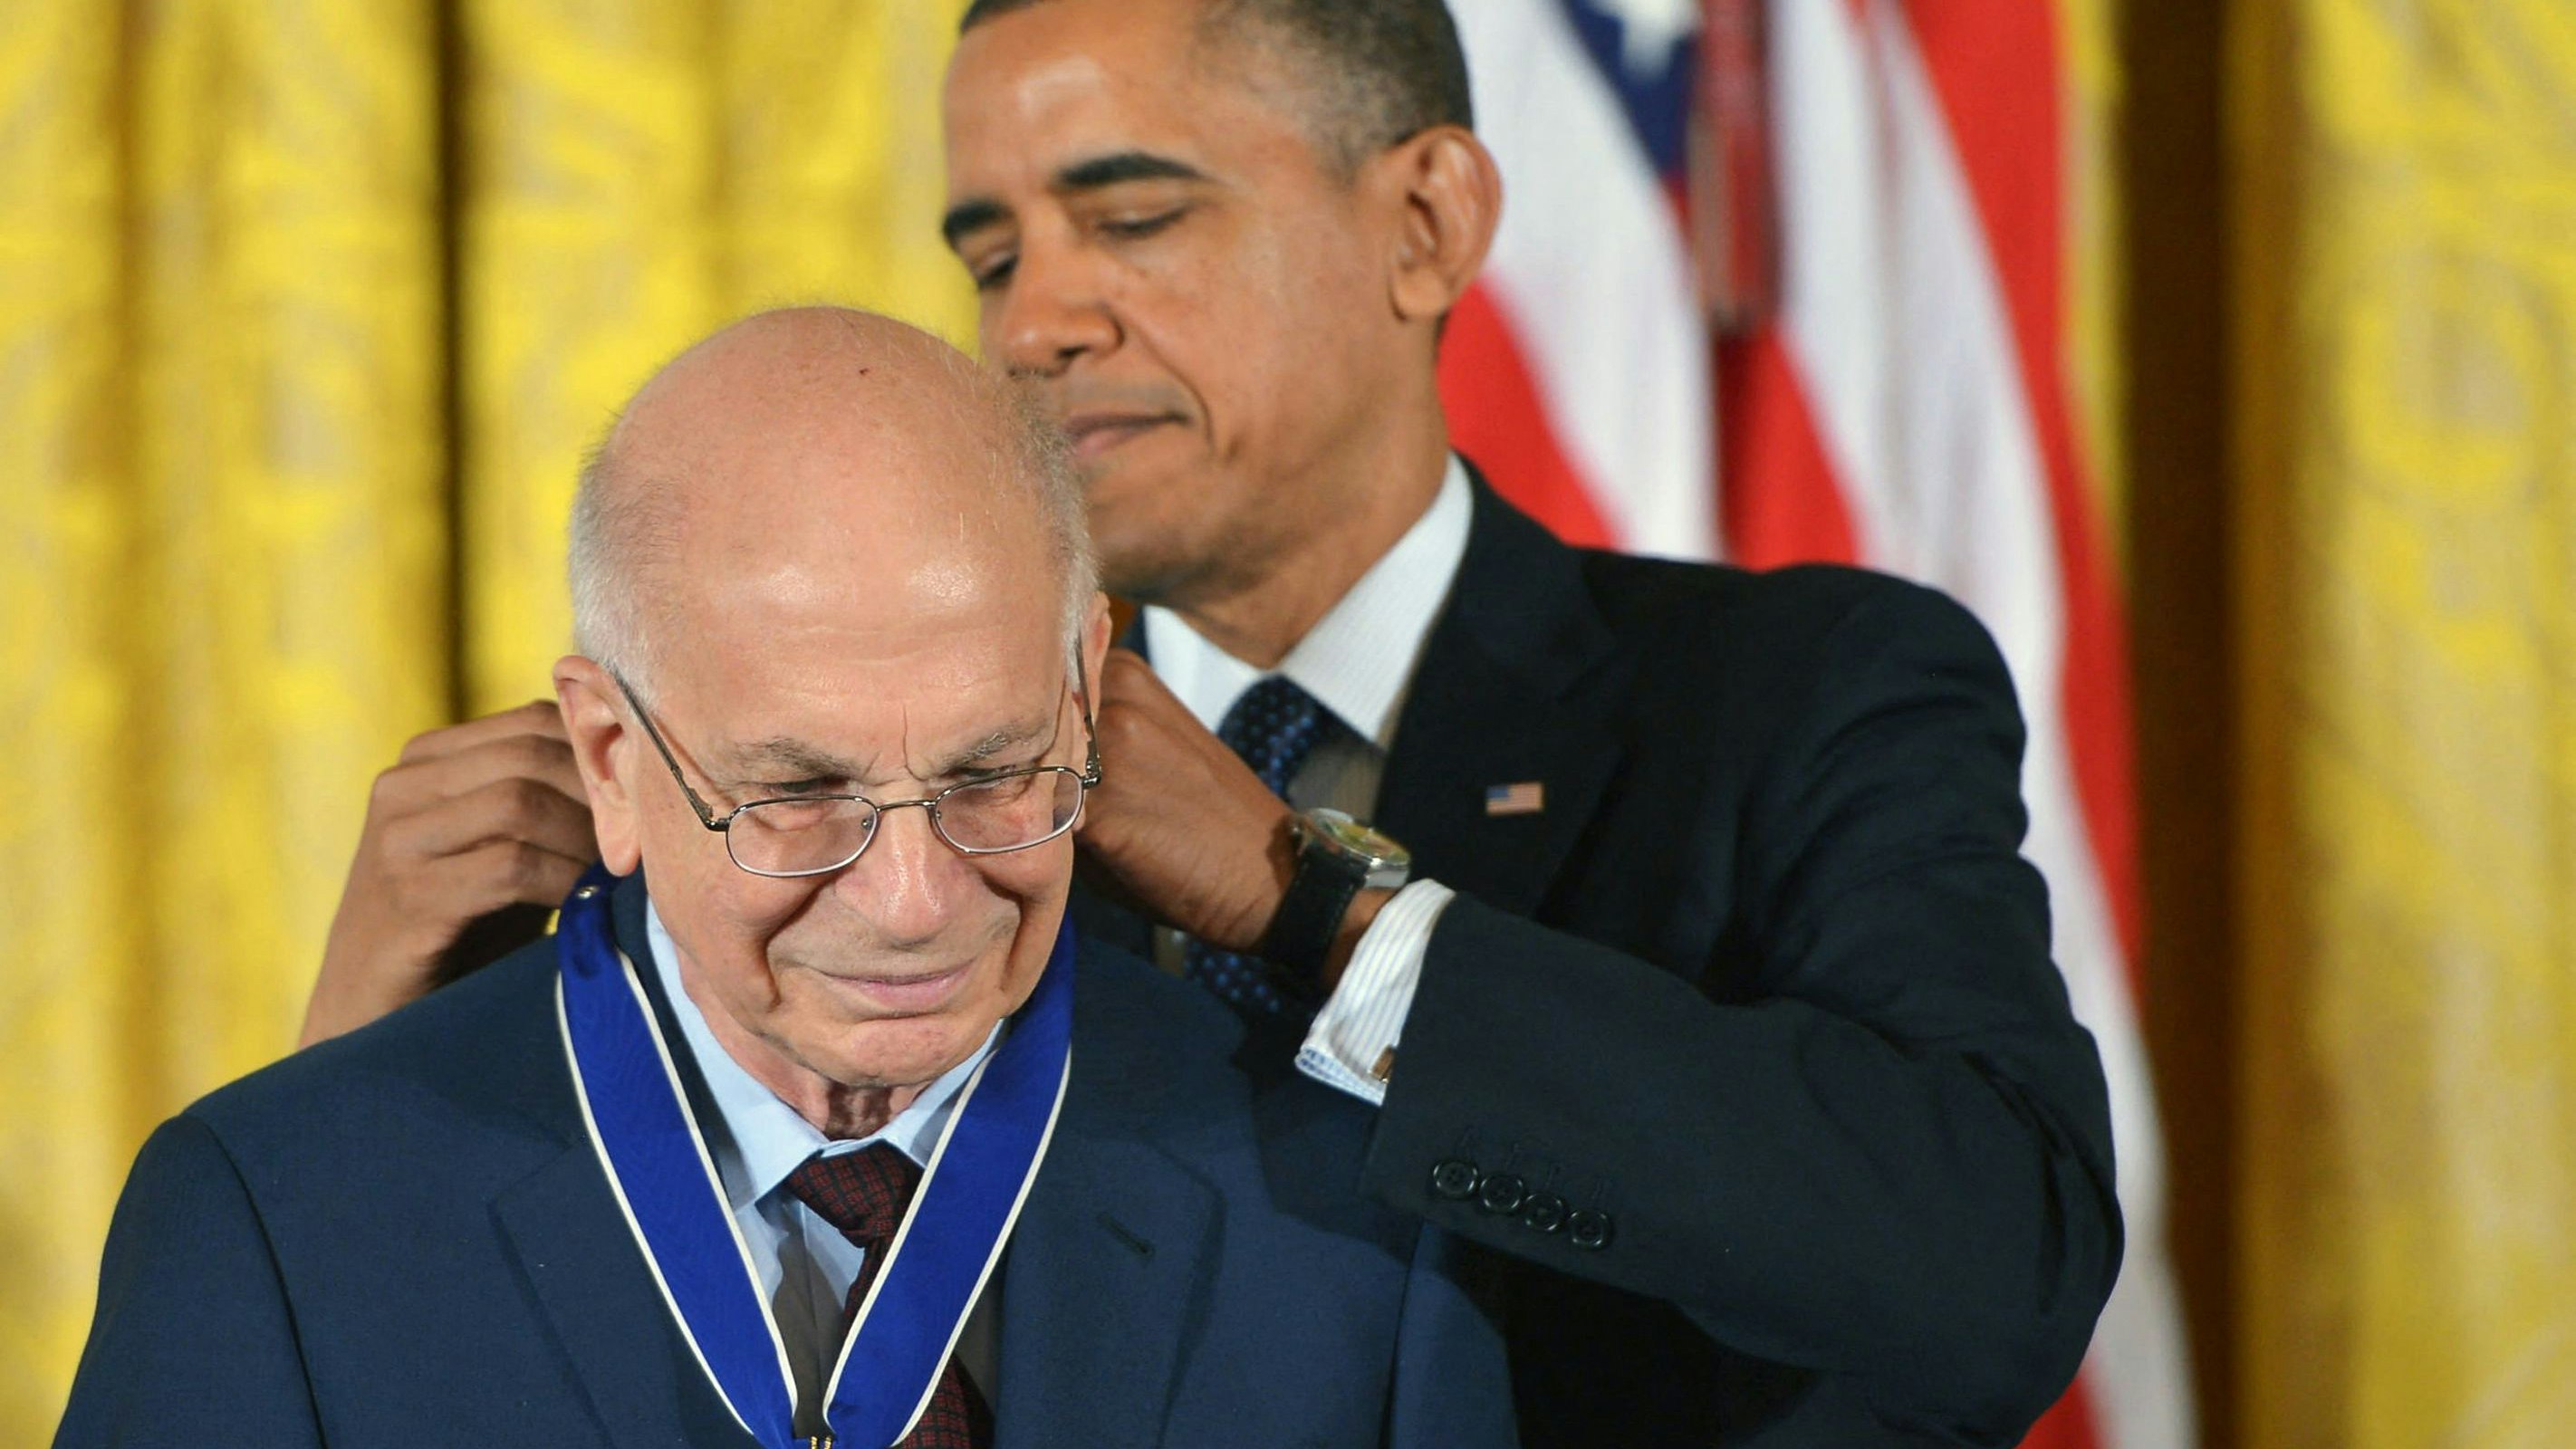 US-Präsident Barack Obama überreicht am 20. November 2013 die "Medal of Freedom" an Wirtschafts-Nobelpreisträger Daniel Kahneman